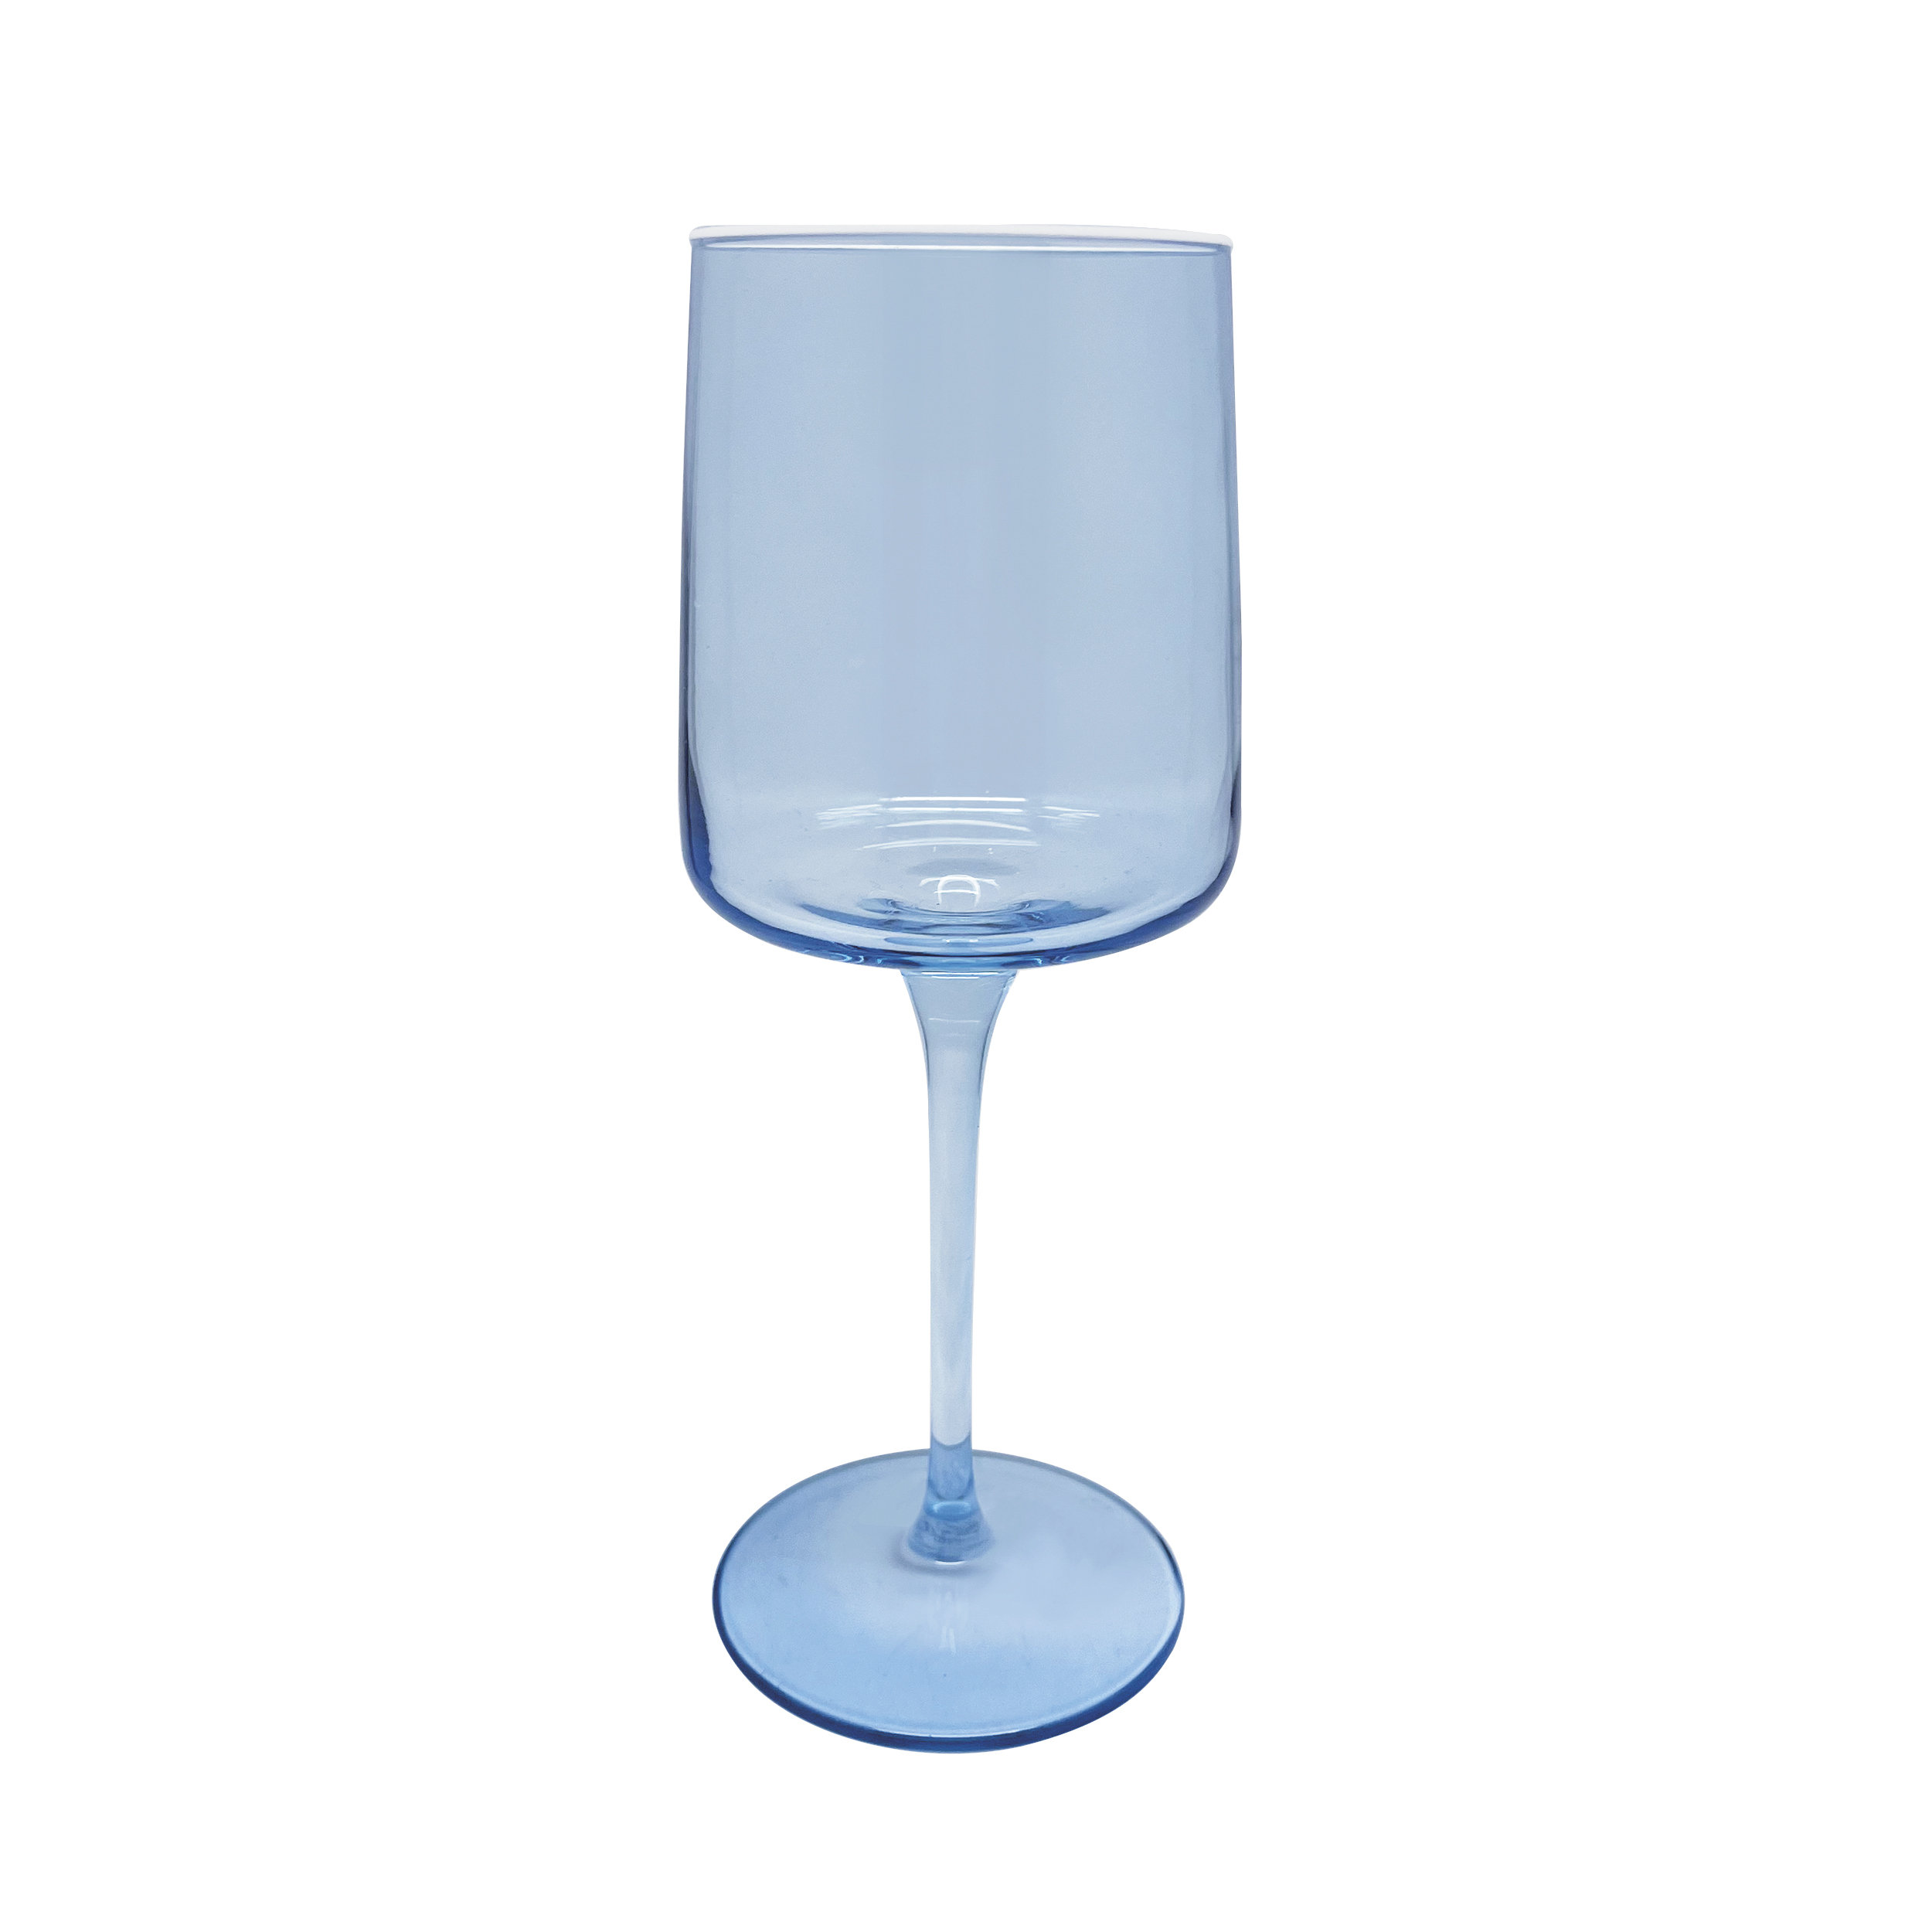 64 Glasses, 12 oz. Solid White Elegant Stemless Plastic Wine Glasses